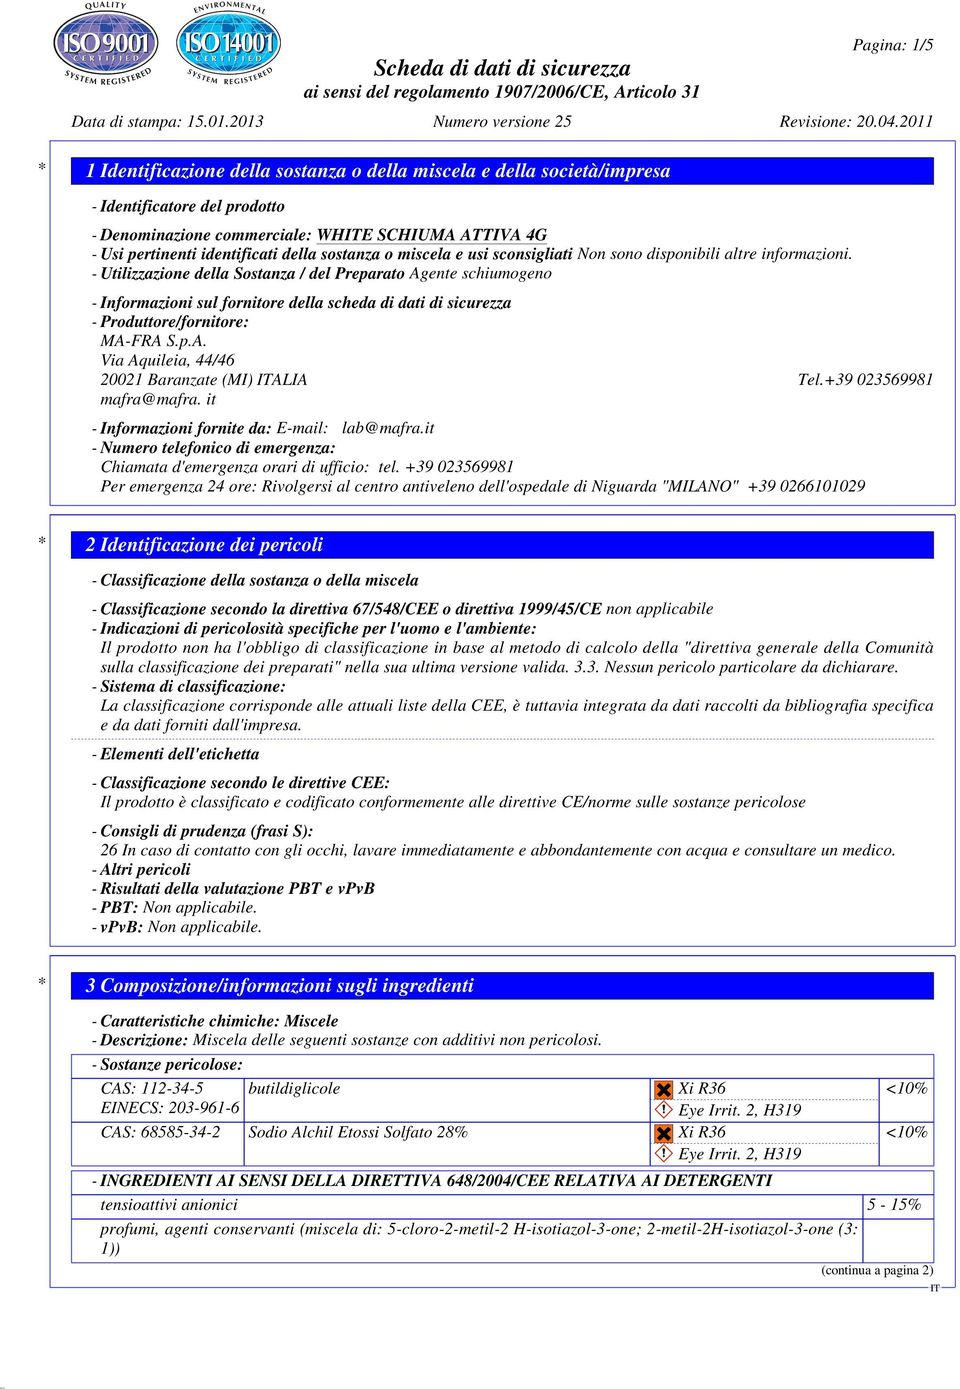 - Utilizzazione della Sostanza / del Preparato Agente schiumogeno - Informazioni sul fornitore della scheda di dati di sicurezza - Produttore/fornitore: MA-FRA S.p.A. Via Aquileia, 44/46 20021 Baranzate (MI) ALIA Tel.